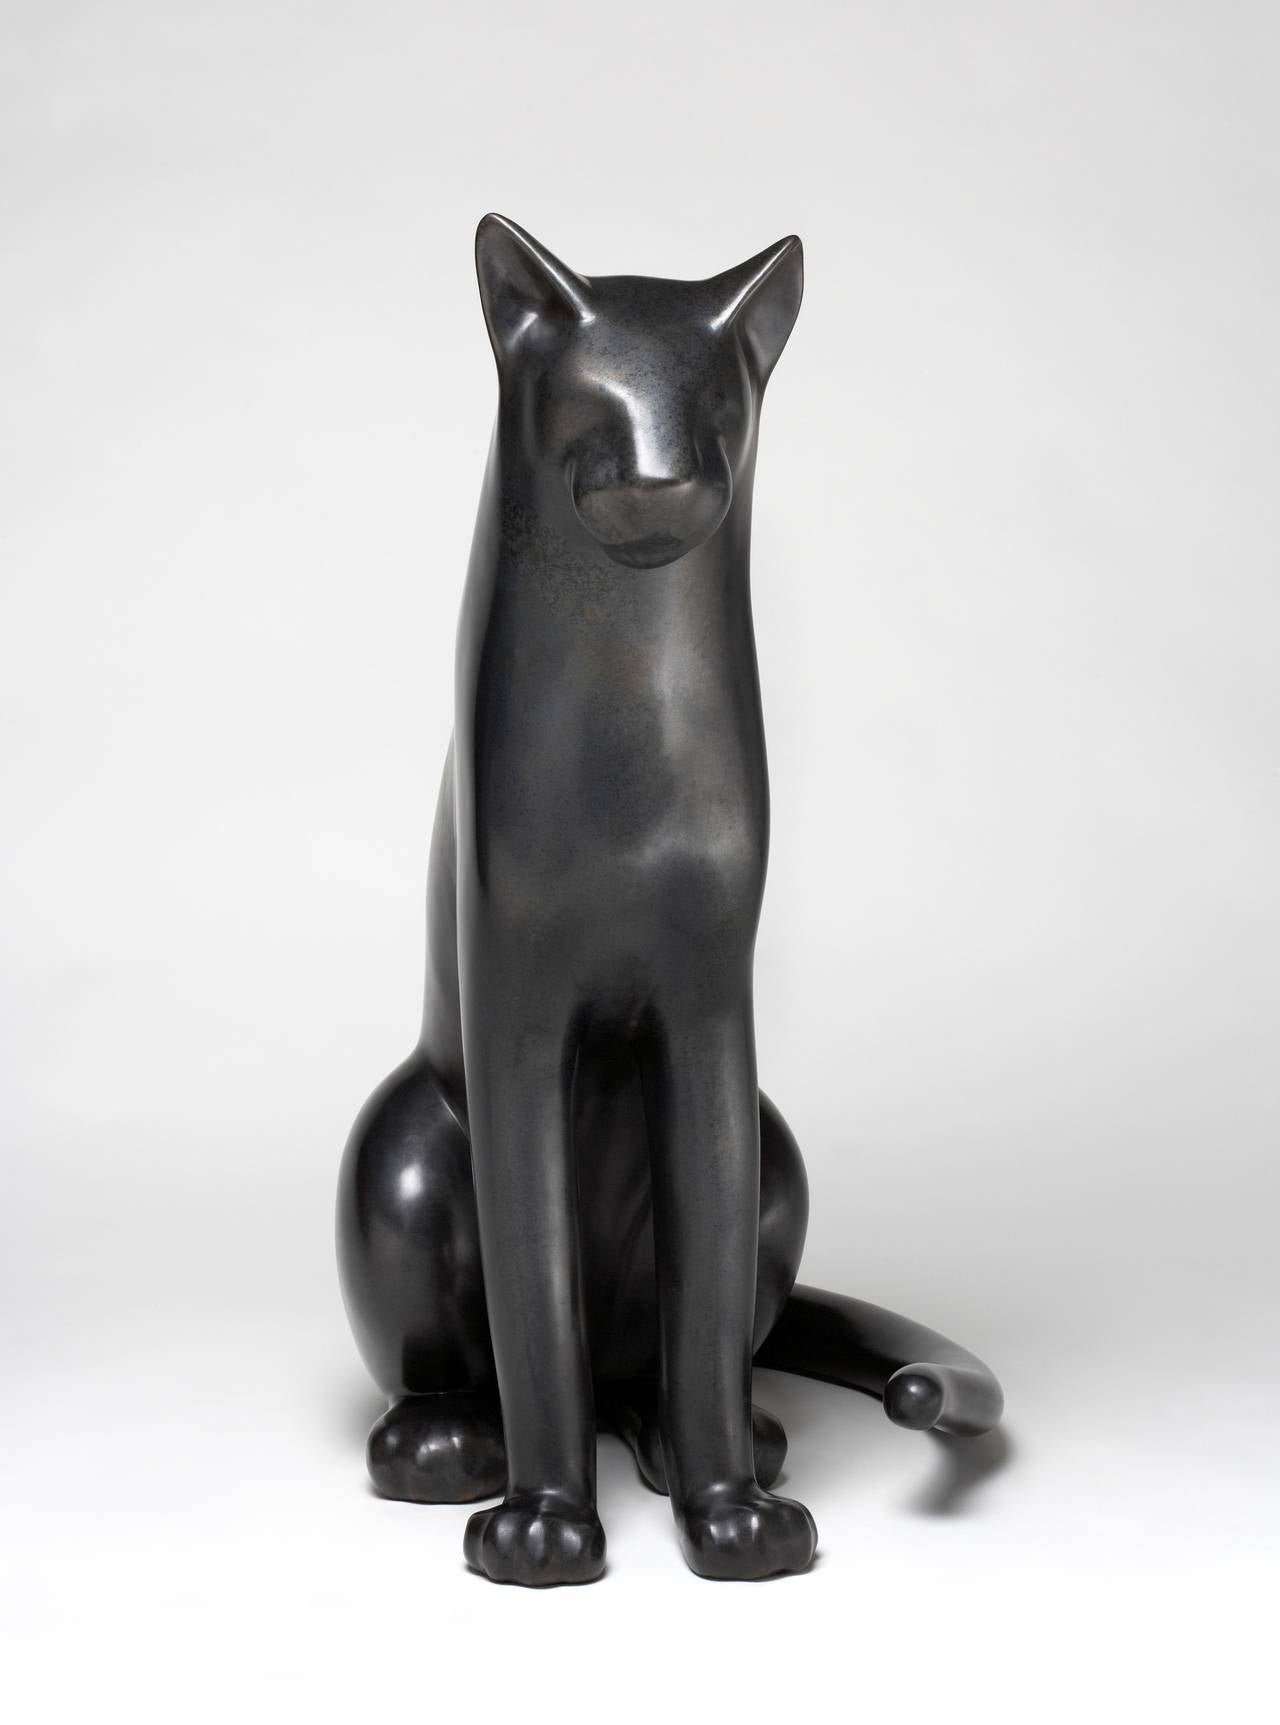 Gwynn Murrill Still-Life Sculpture - Big Sitting Cat